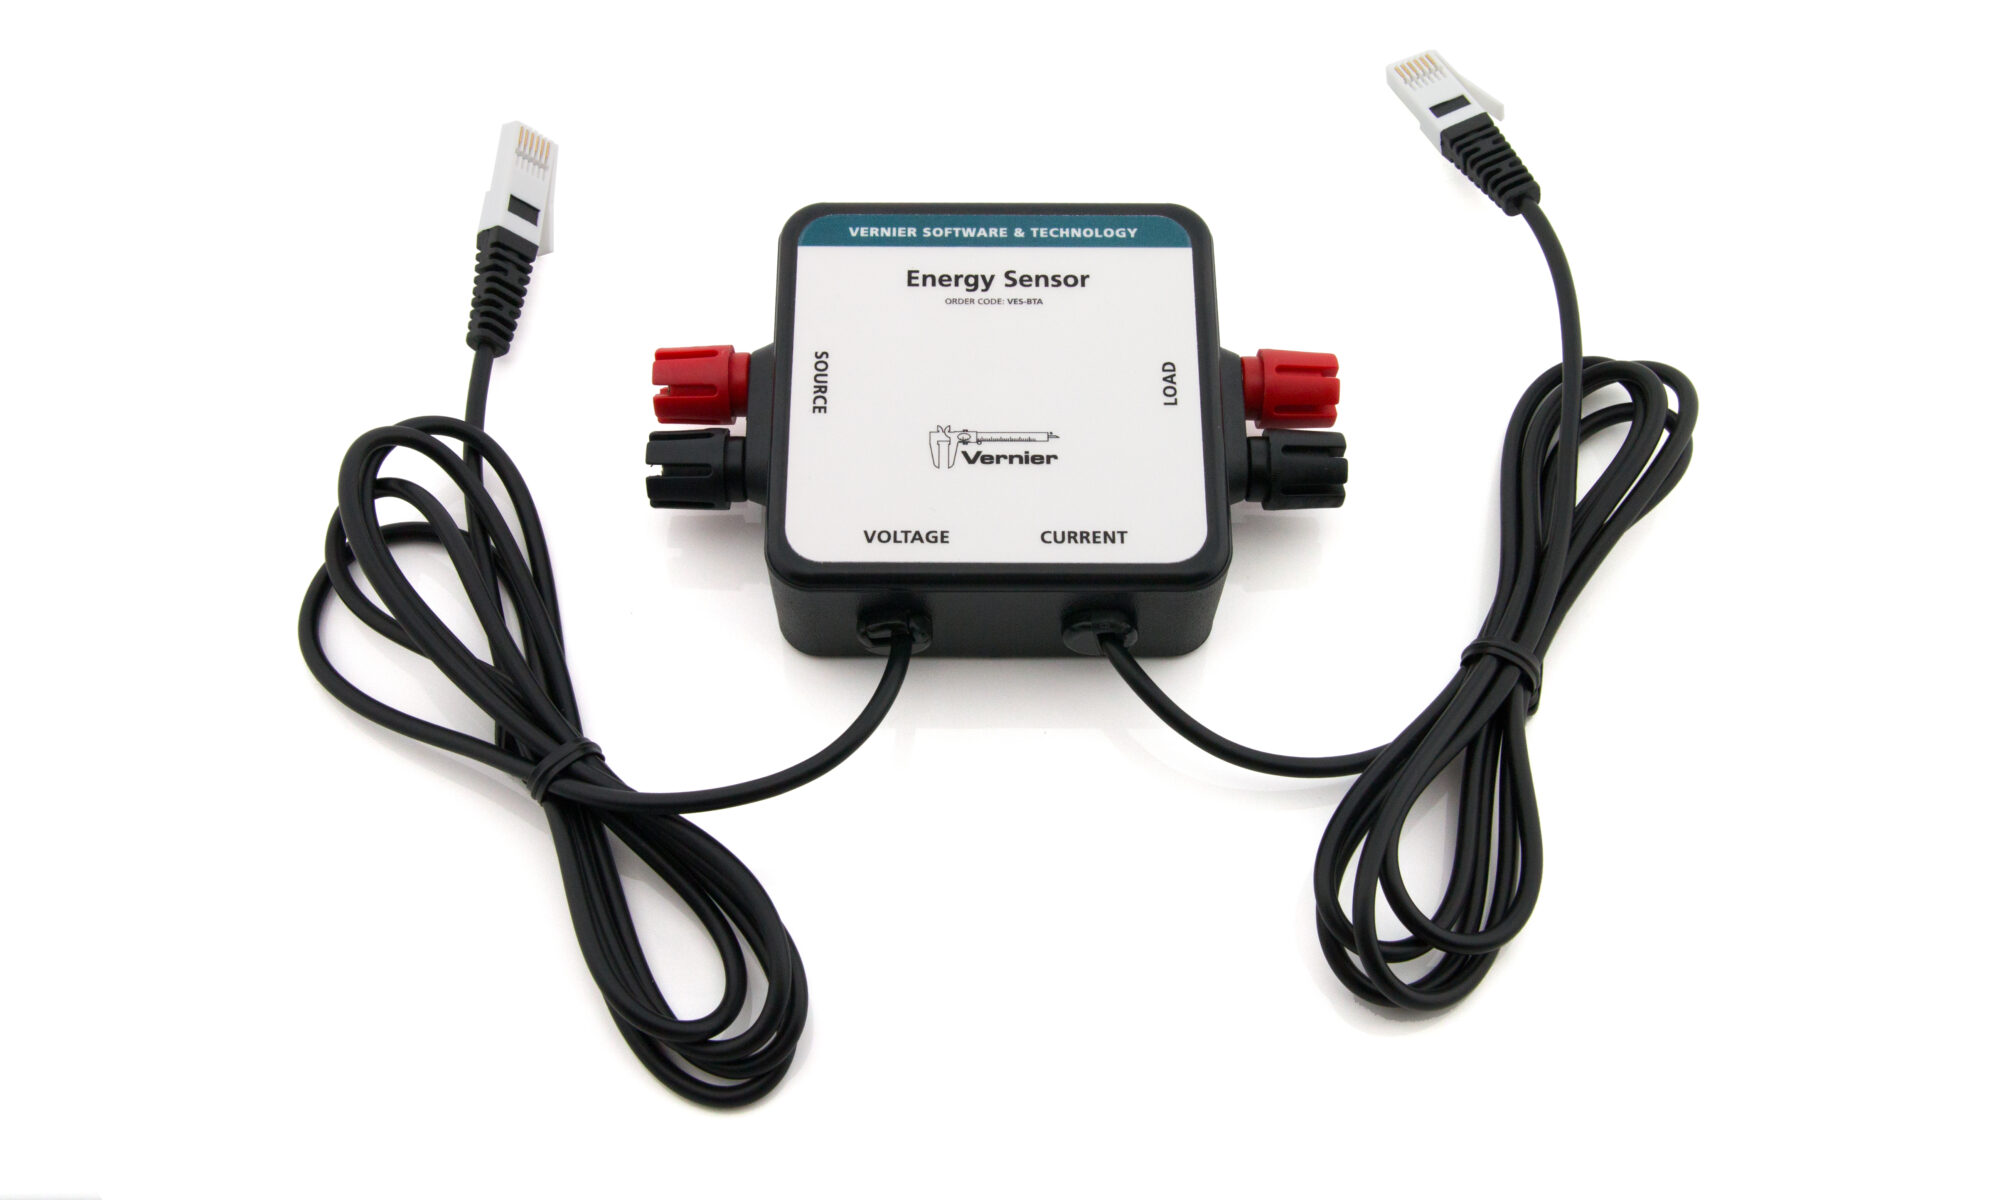 Energy Sensor product image